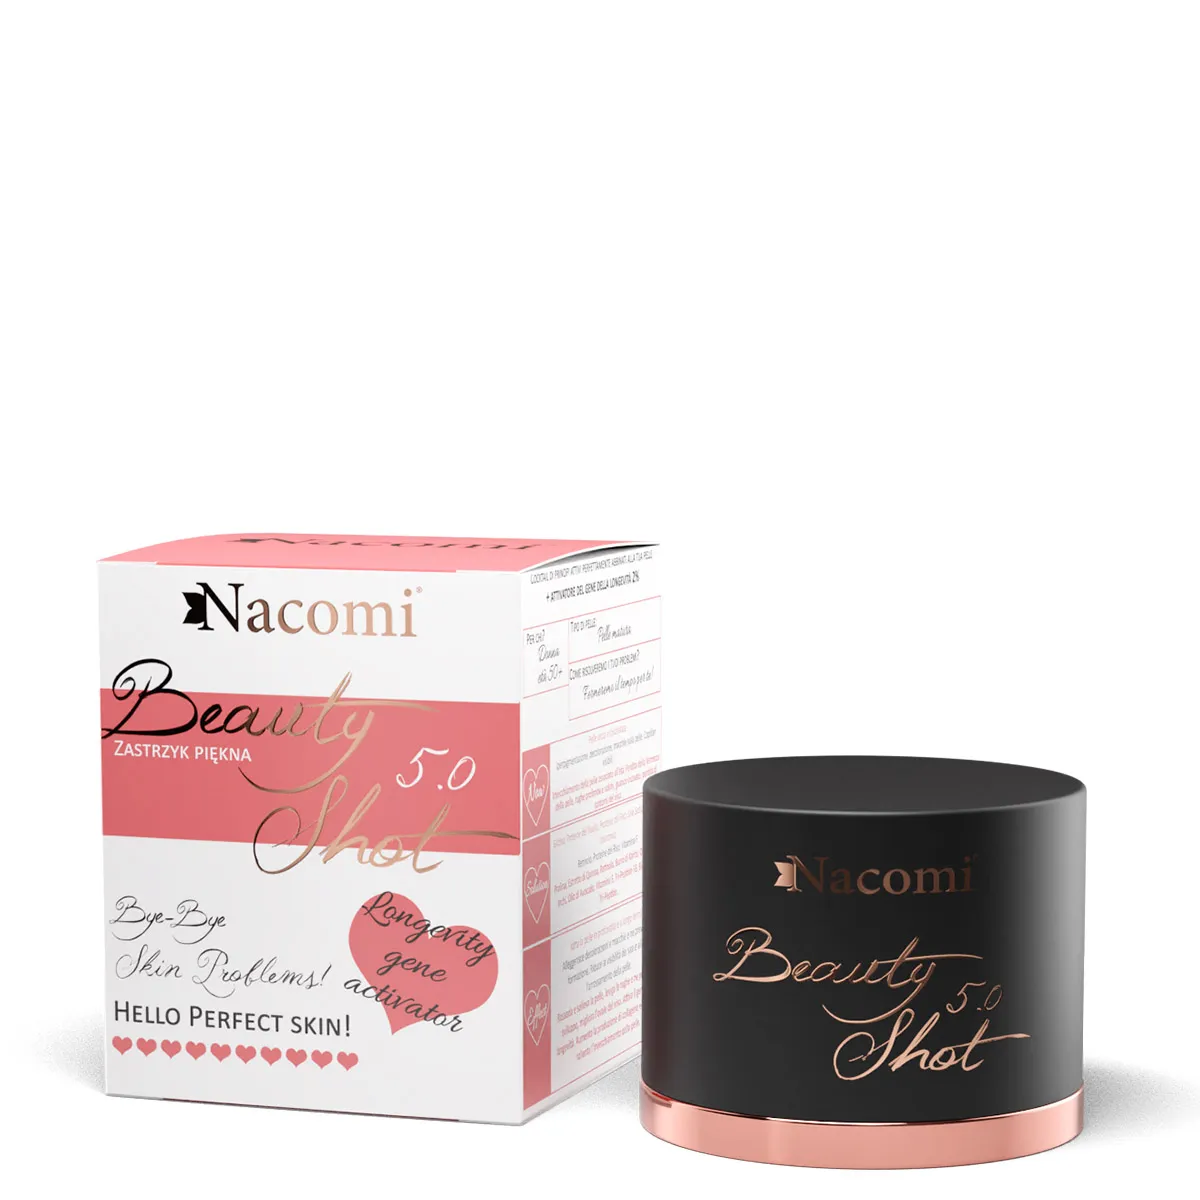 Nacomi, serum Beauty Shot 5.0, 30 ml 